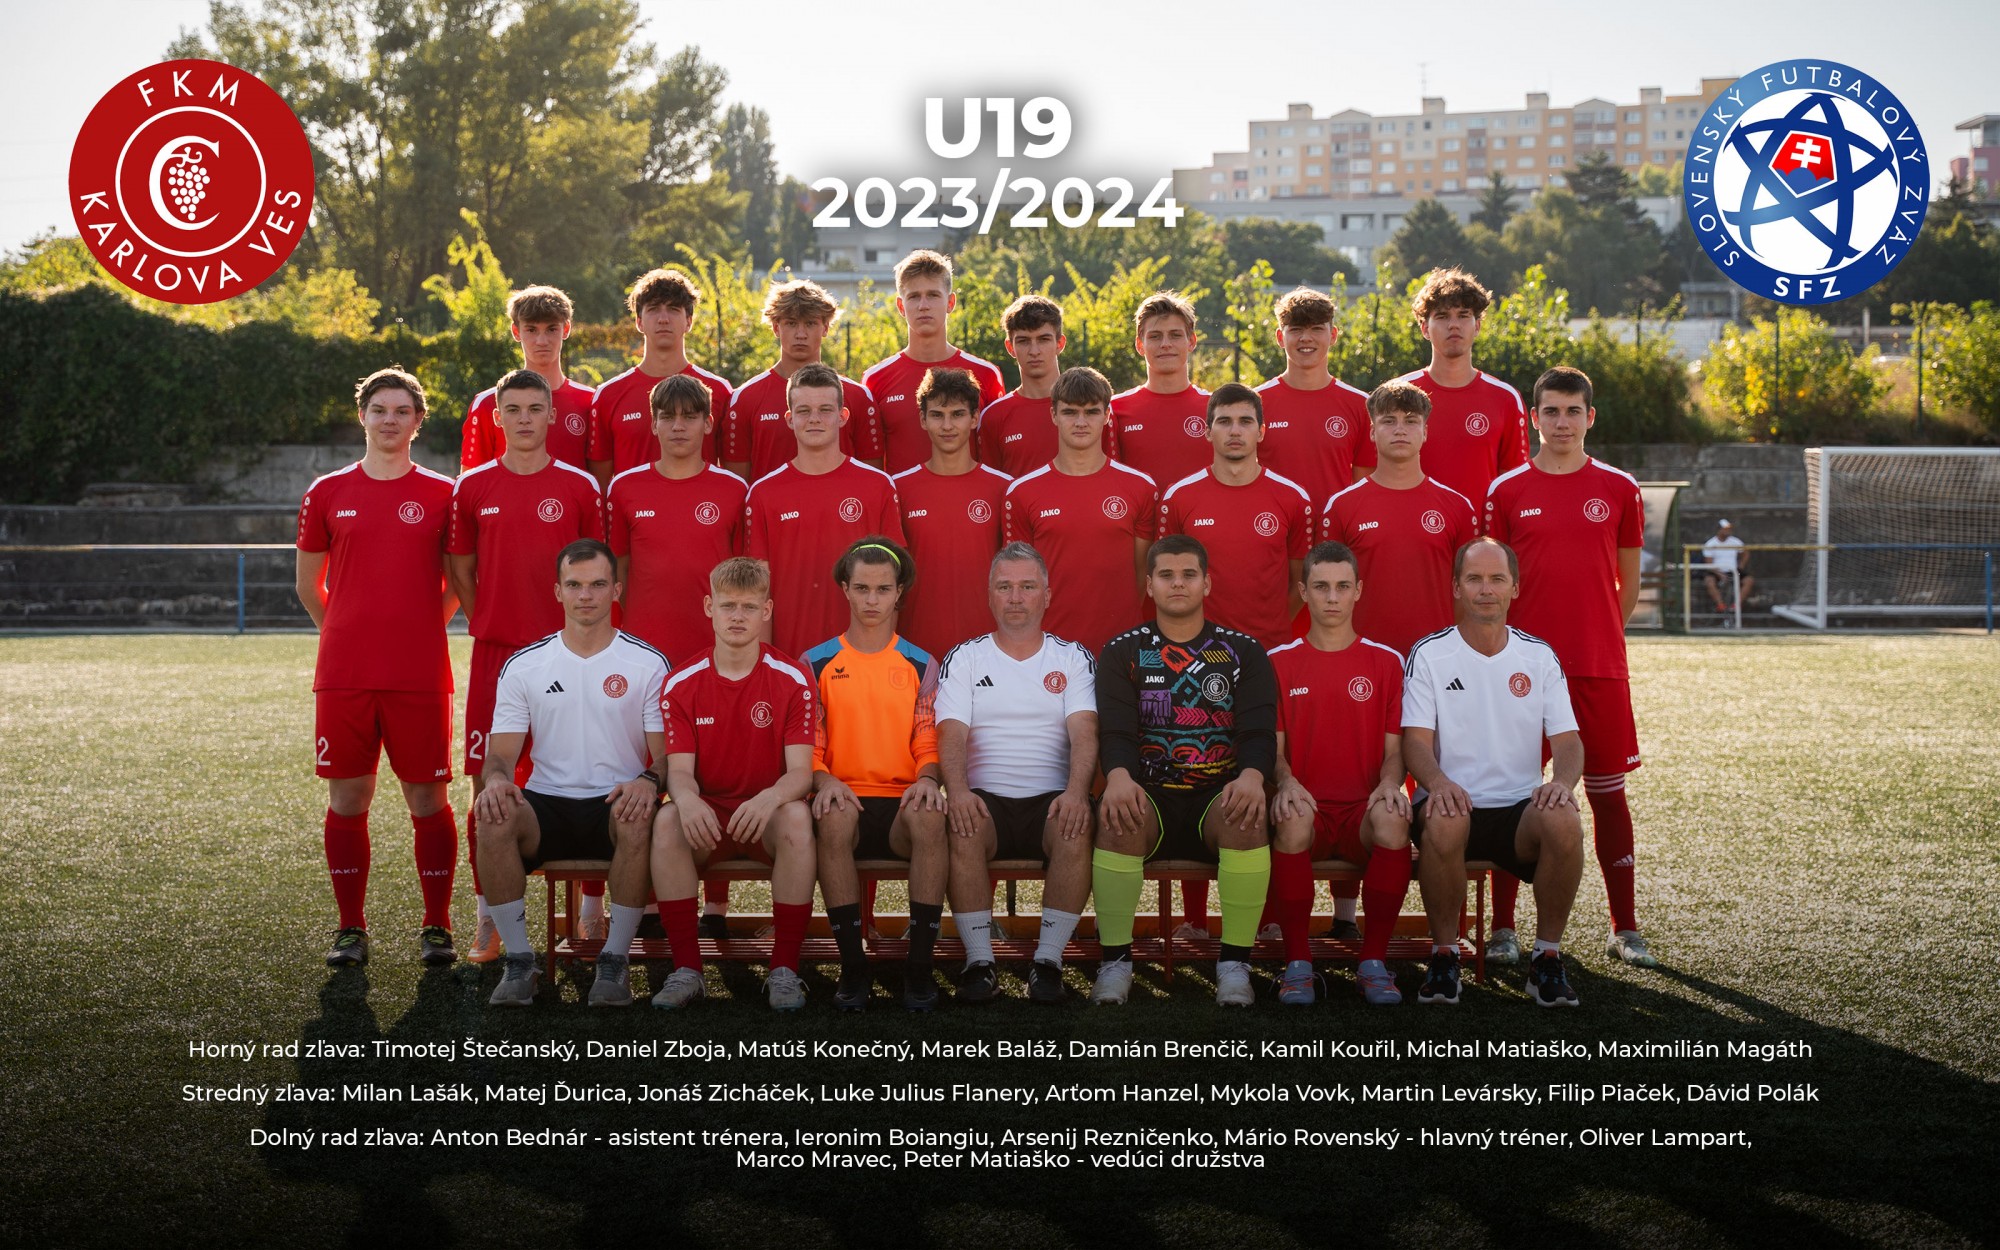 Starší dorast U19 (2005, 2006) súťažný ročník 2021/2022